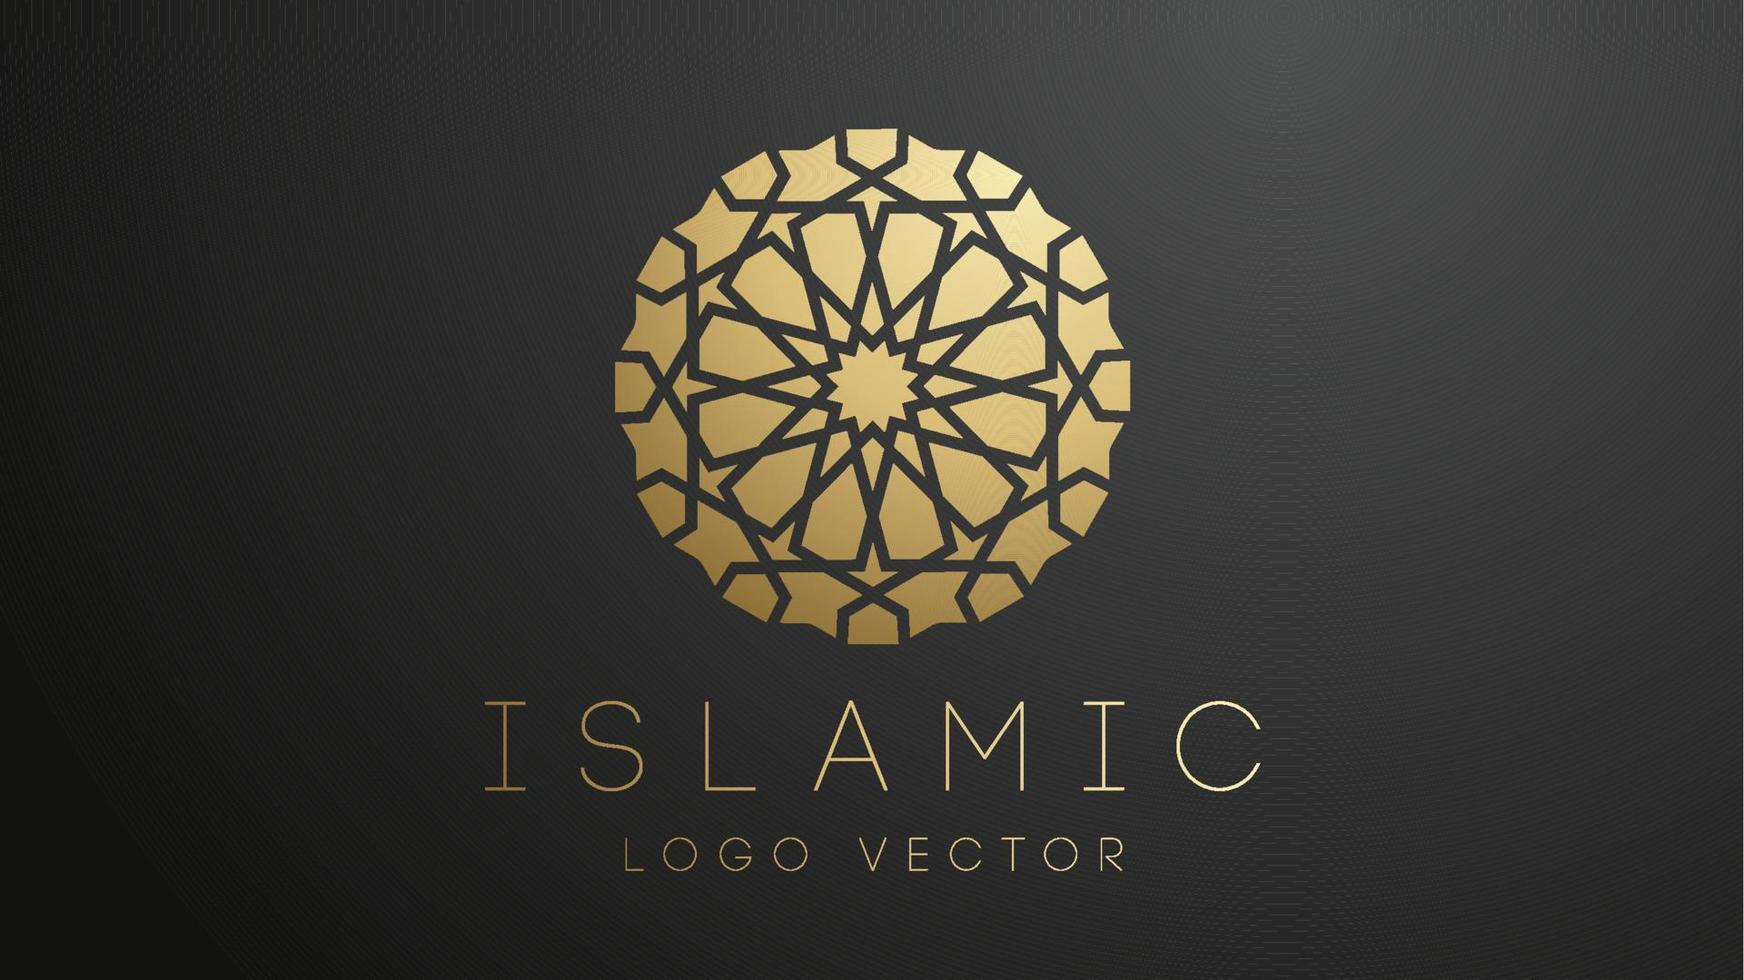 Logotipo islámico de oro 3d. ornamento islámico geométrico redondo mandala. logotipo musulmán eps 10 vector